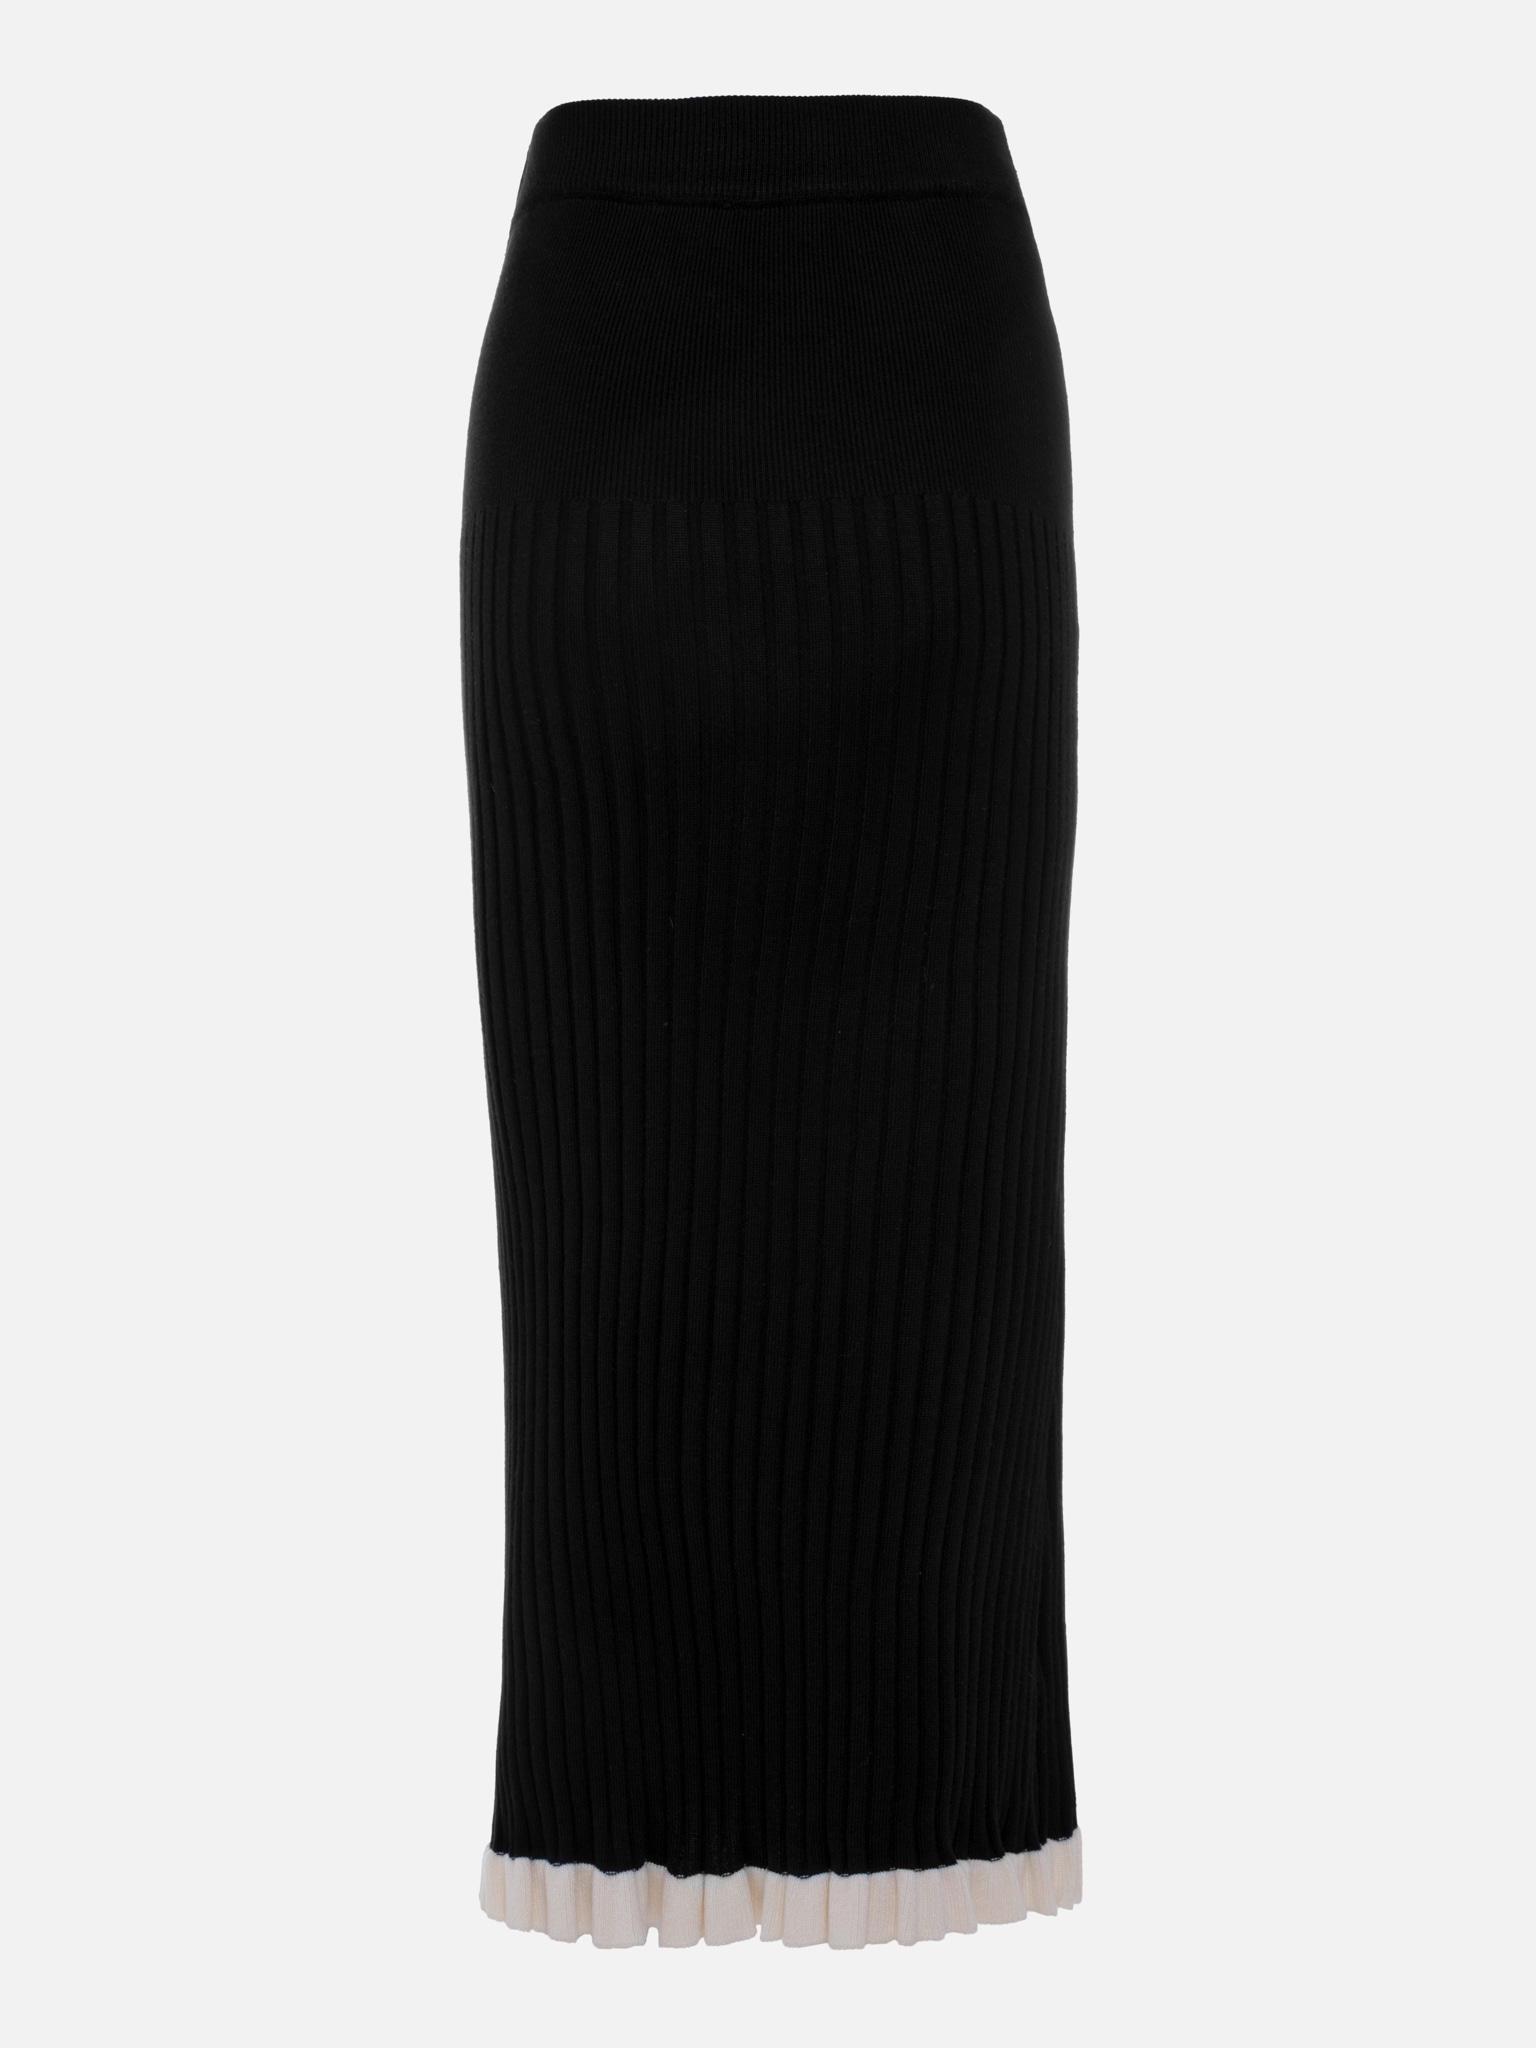 Rib-knit midi skirt with contrasting ruffles :: LICHI - Online fashion ...